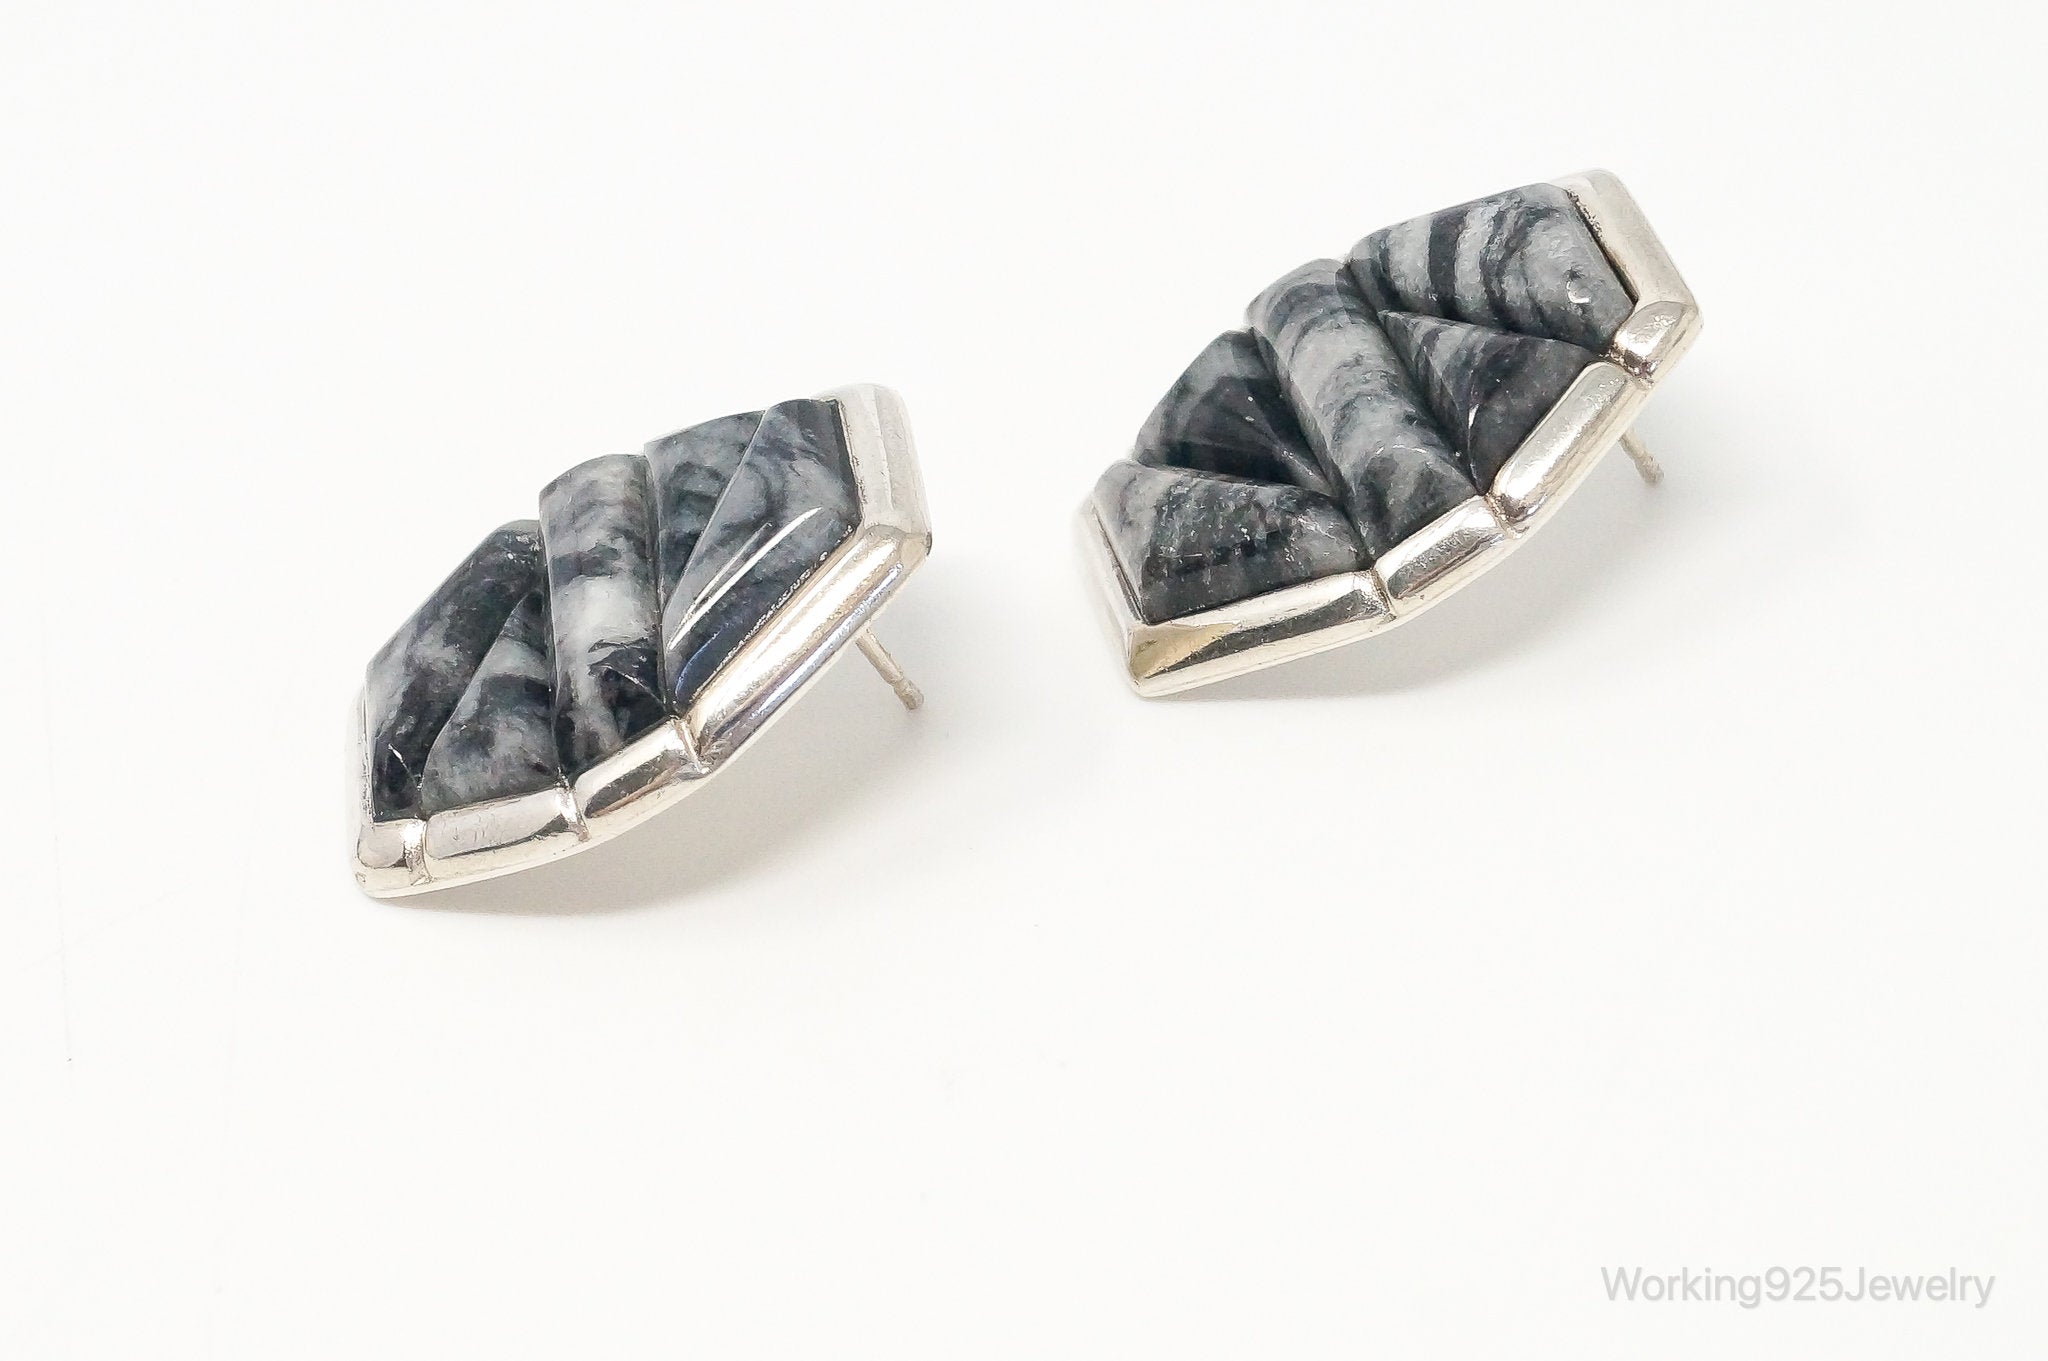 Designer Desert Rose Trading Co Black Jasper Ring Sterling Silver Earrings